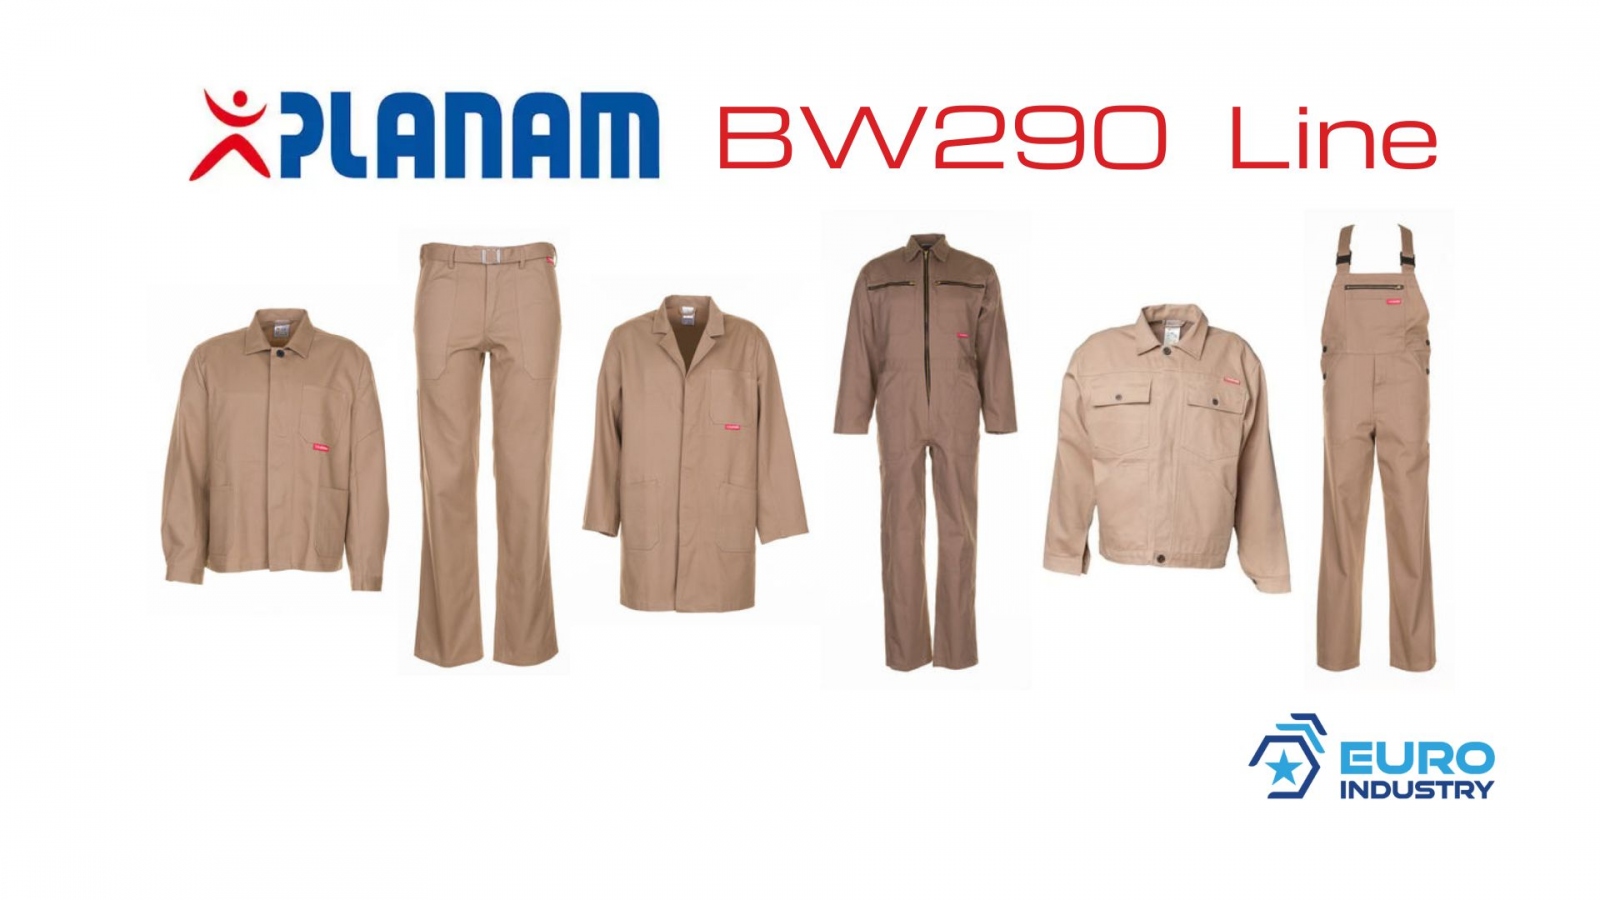 pics/Planam/0154/planam-bw-290-linie-beige-khaki-baumwolle-details.jpg